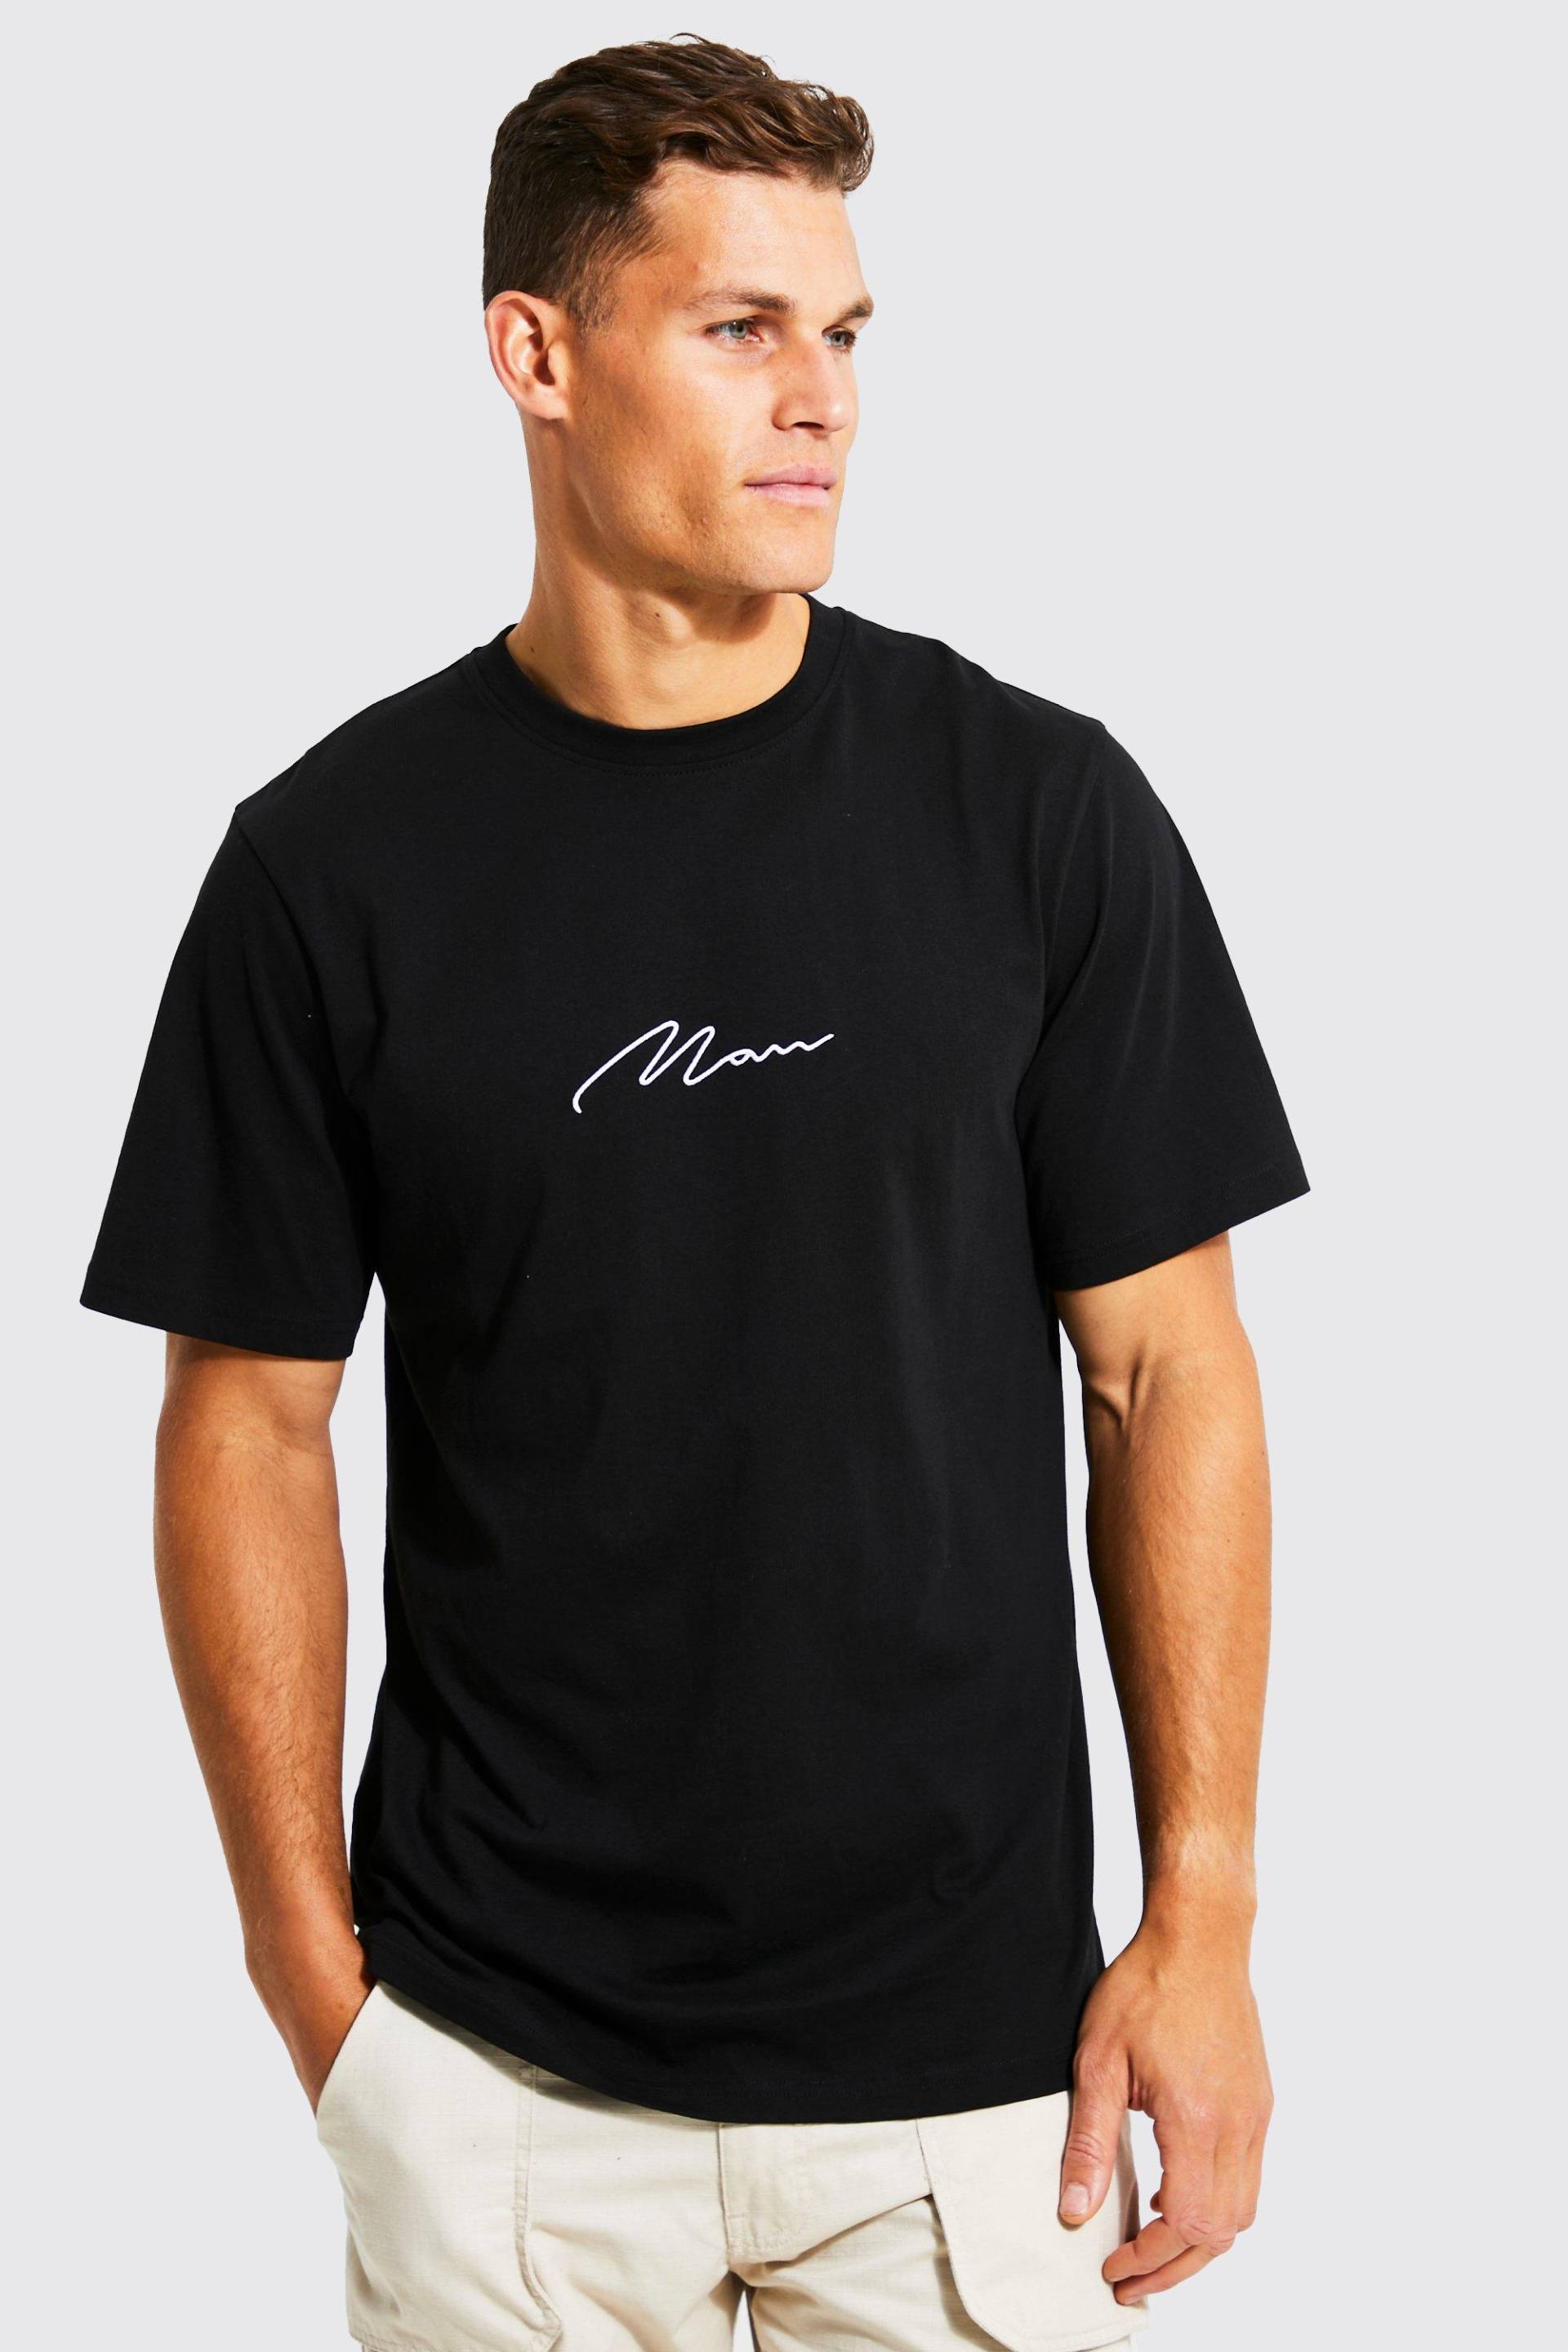 Mens Tall T-Shirt mit Man-Schriftzug - Schwarz - M, Schwarz von boohooman